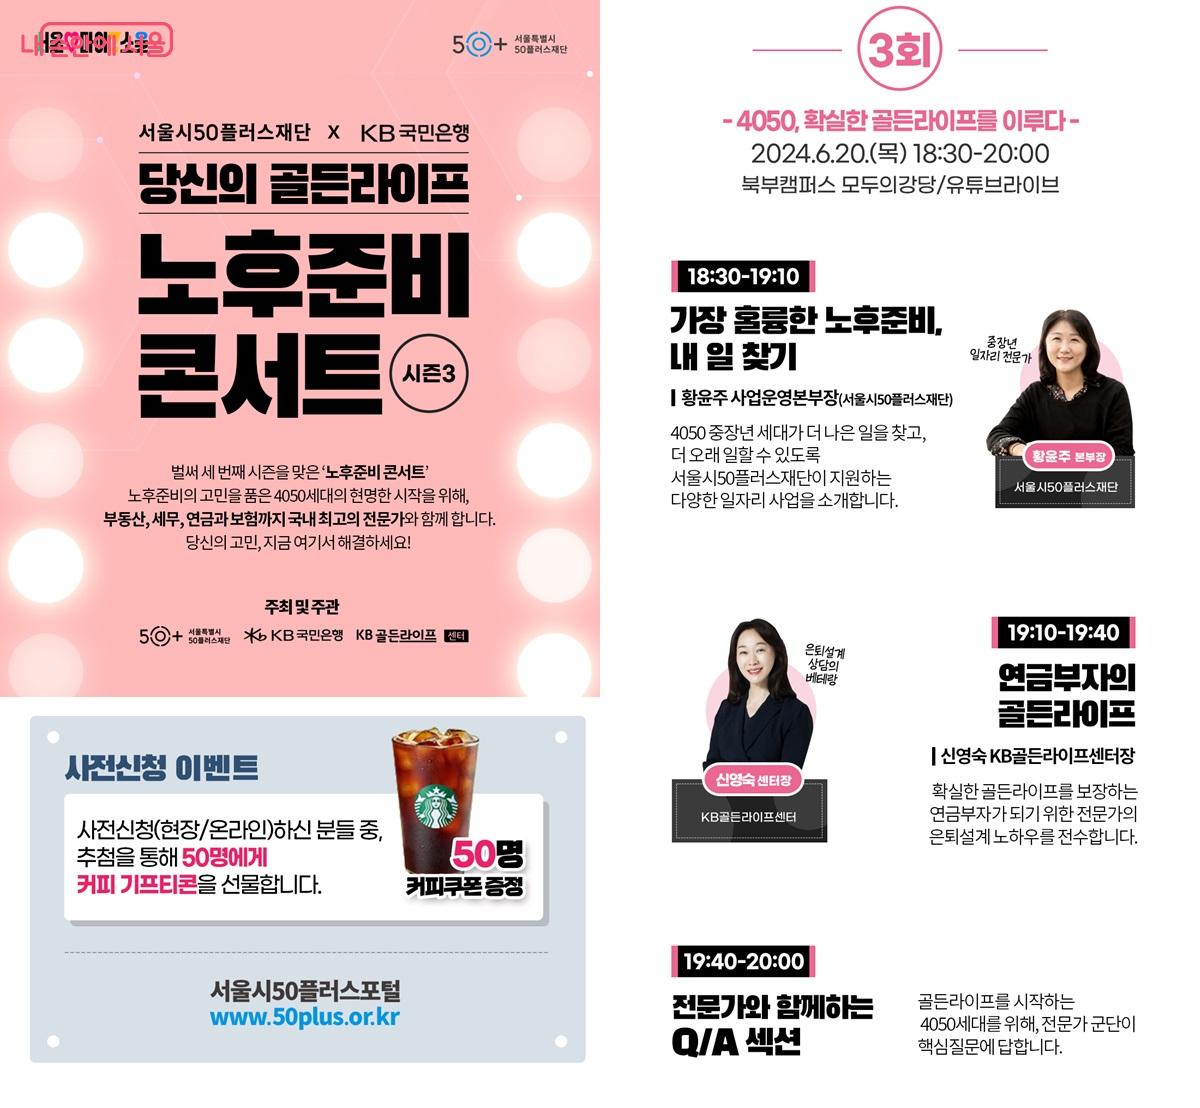 6월 20일, 서울시50플러스 북부캠퍼스에서 '노후준비 콘서트 시즌 3' 세 번째 행사를 개최한다. ©서울시50플러스재단